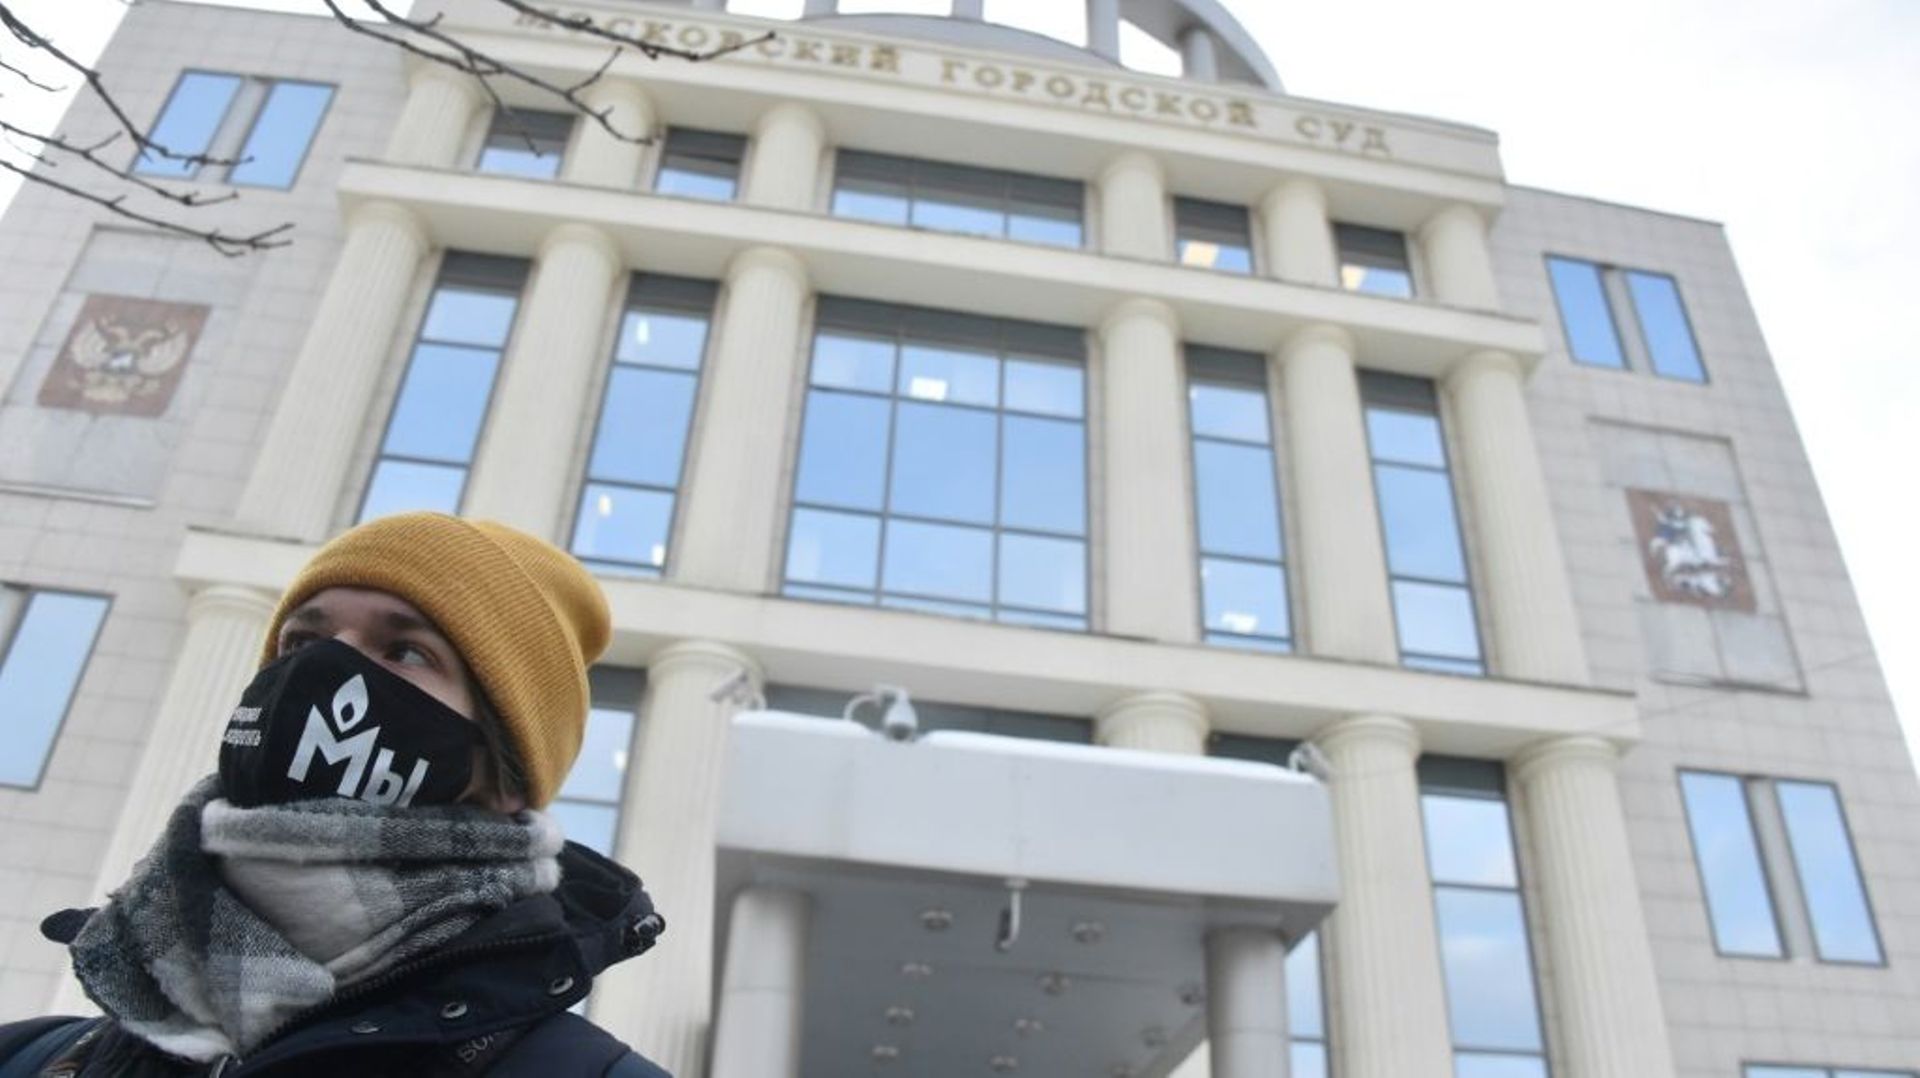 Un partisan de Memorial devant le tribunal de Moscou où l’ONG russe accusée de diverses infractions joue sa survie, le 23 décembre 2021